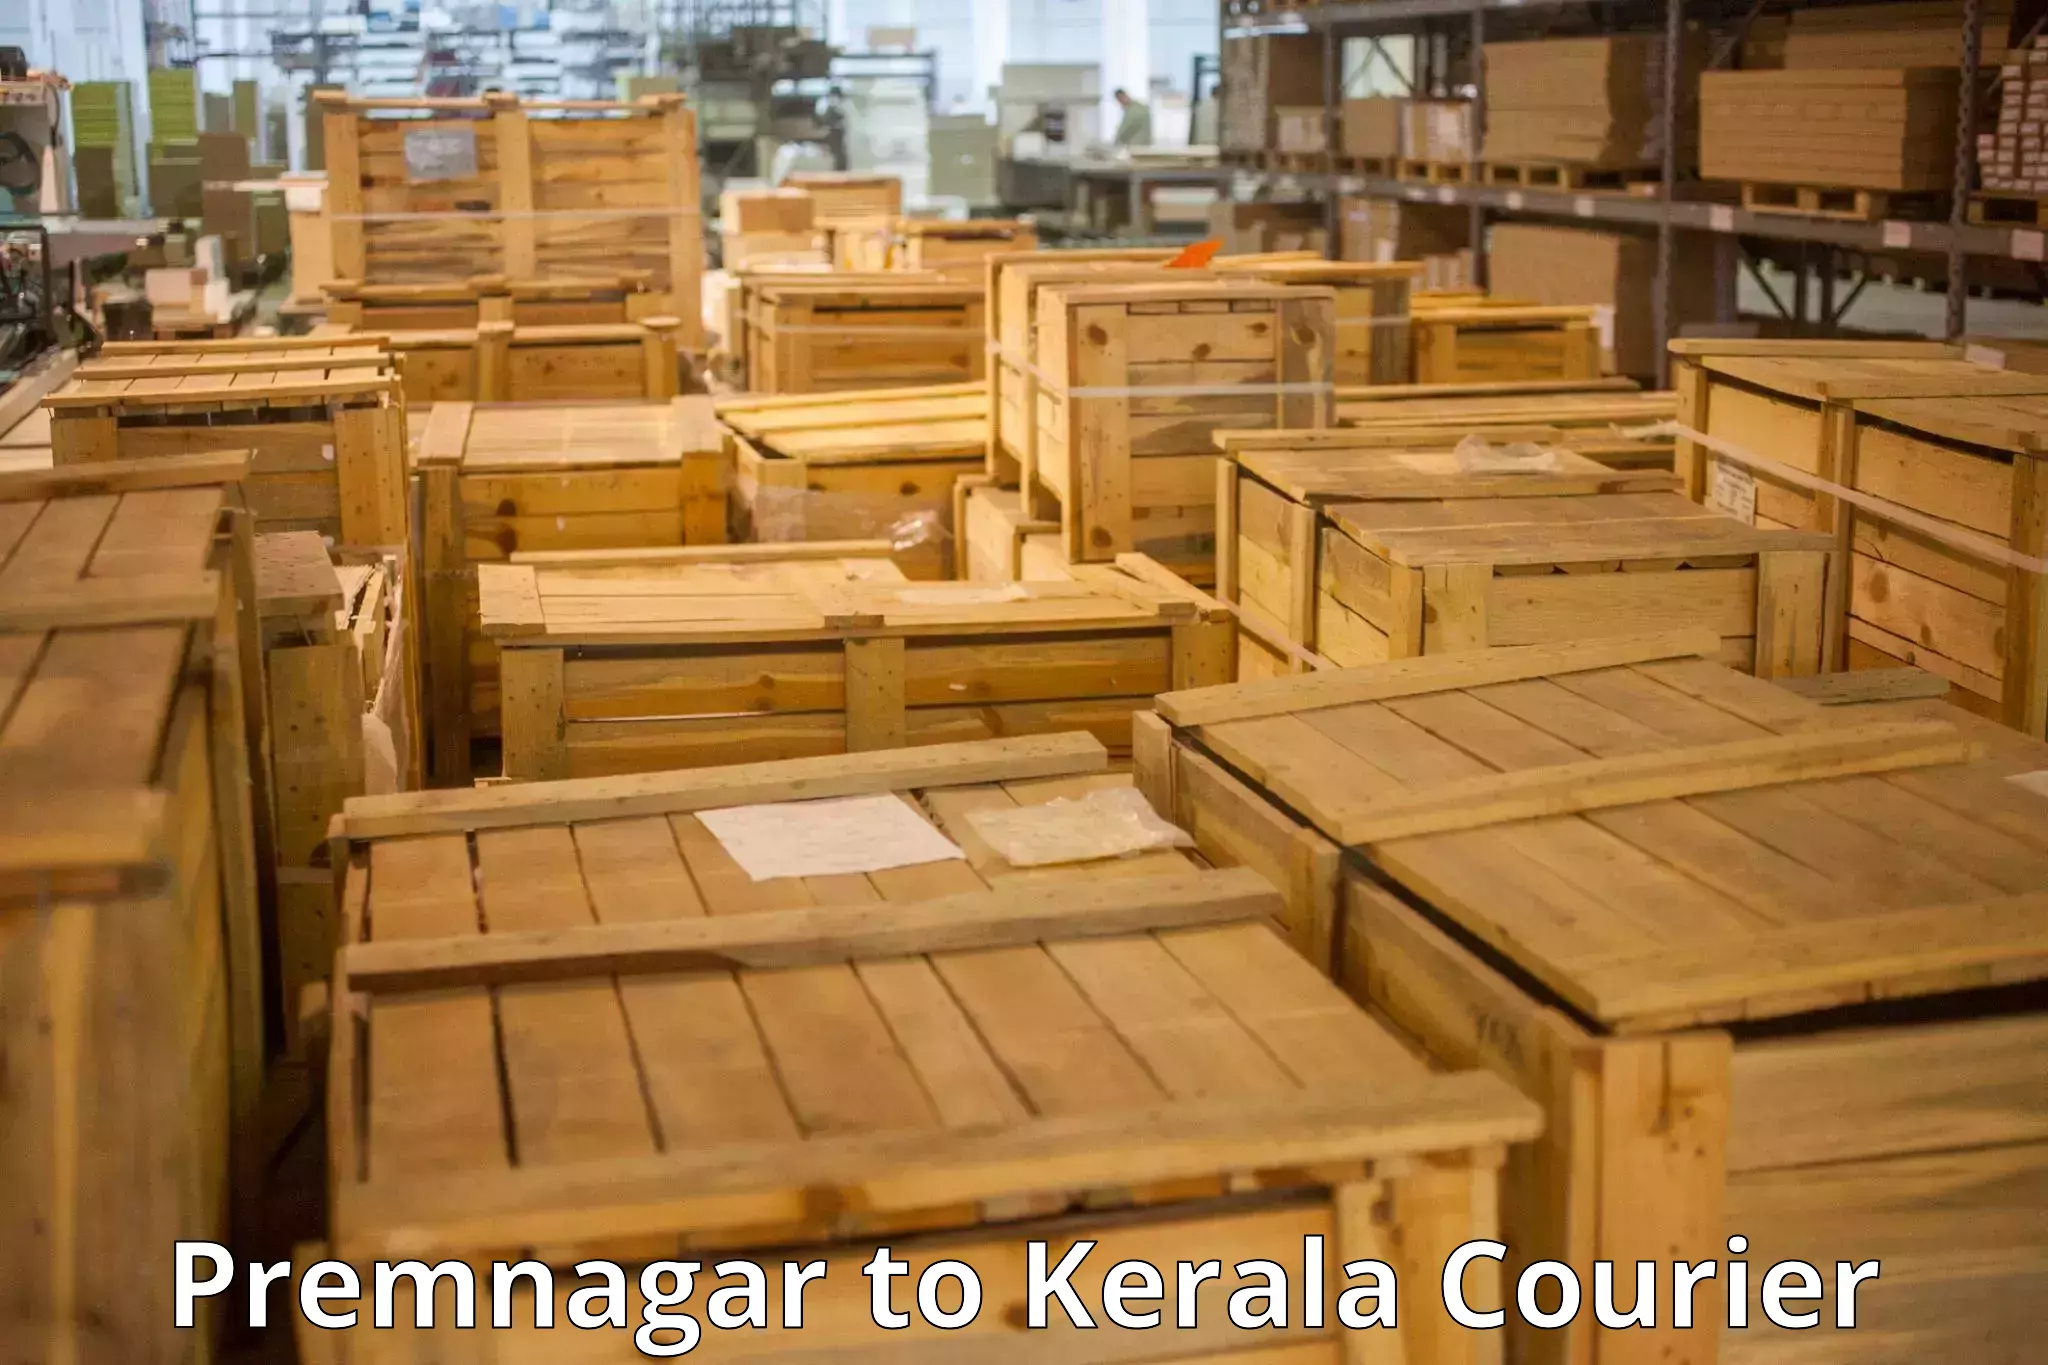 Luggage shipment specialists Premnagar to Kochi